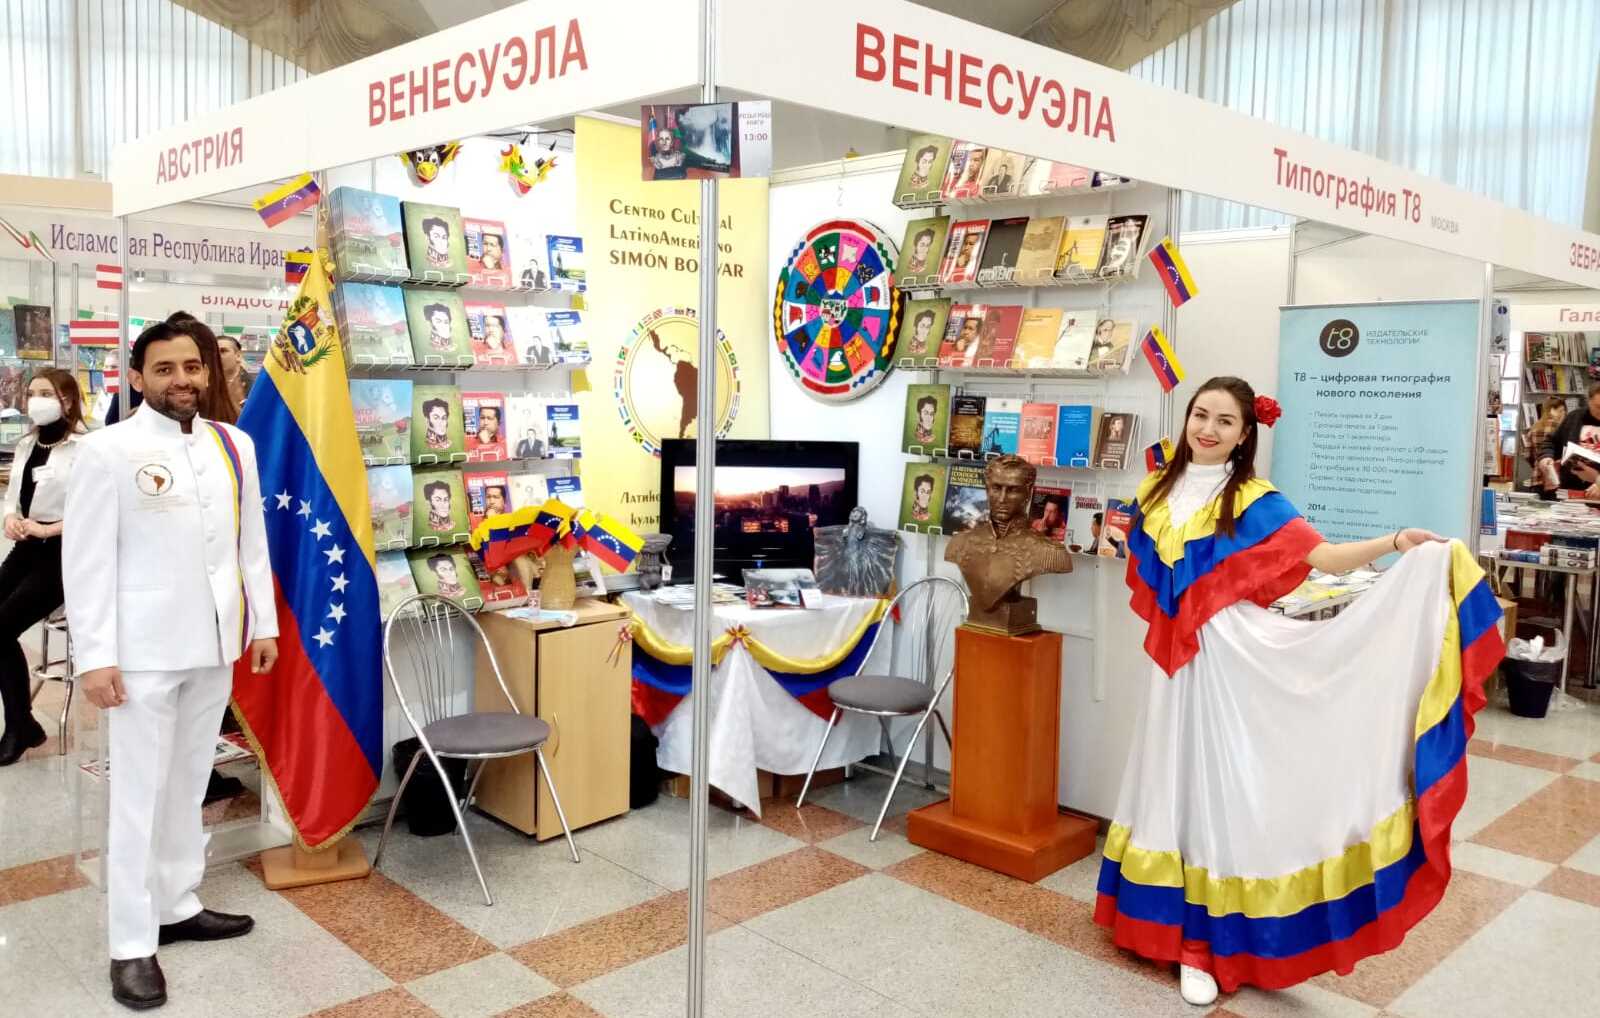 Literatura venezolana se expone en la XXVII Feria Internacional del Libro de Minsk